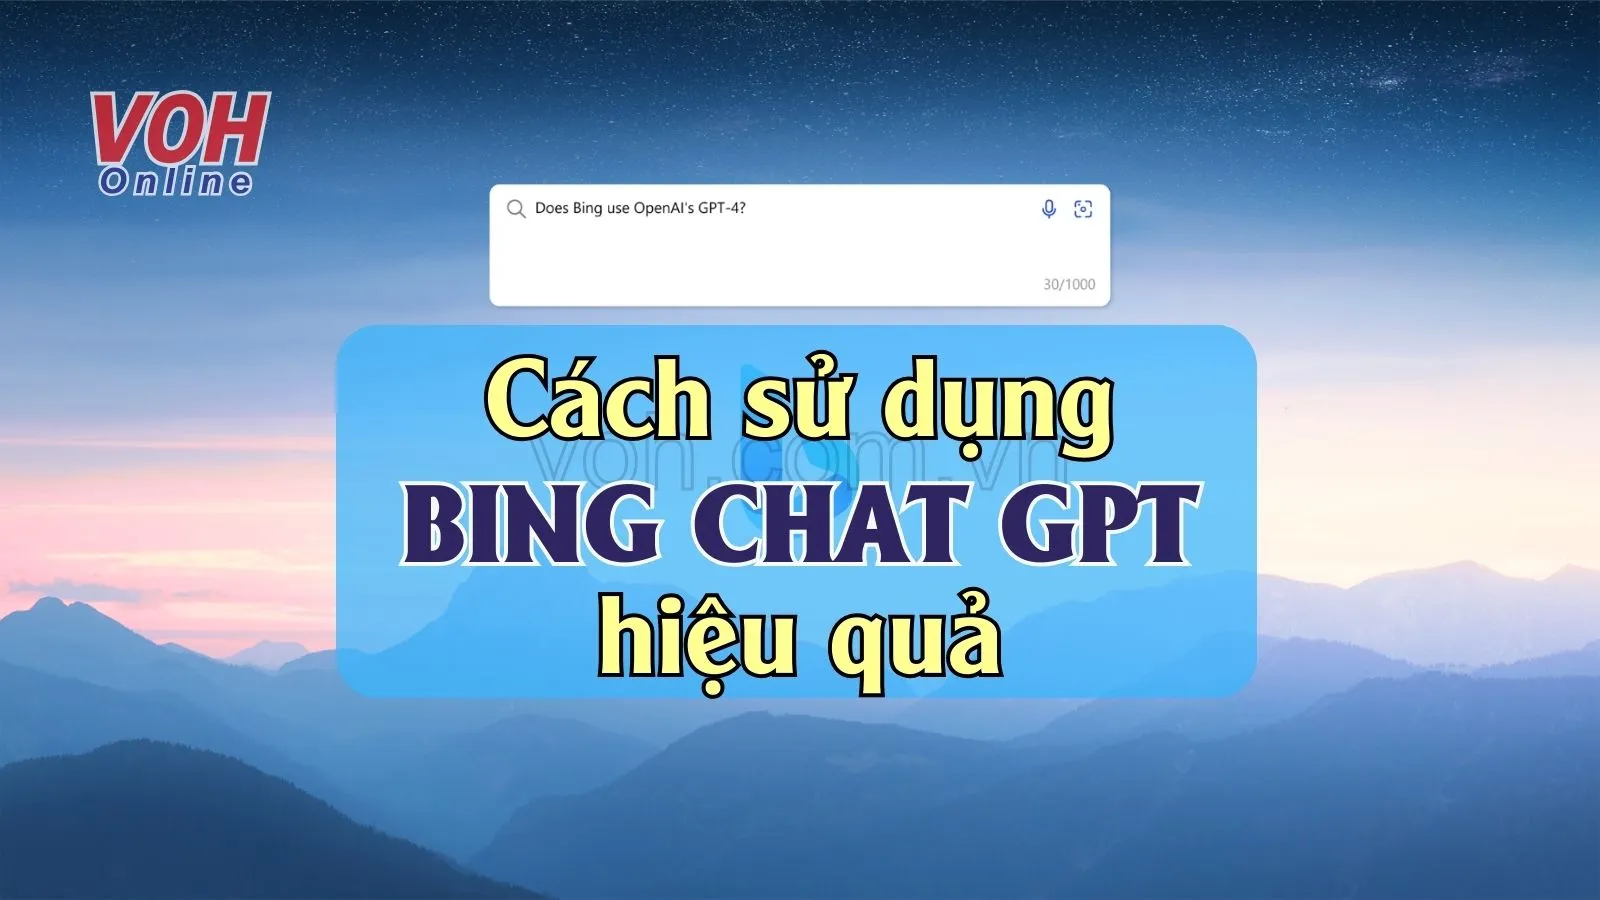 Hướng dẫn sử dụng Bing ChatGPT nhanh chóng và hiệu quả